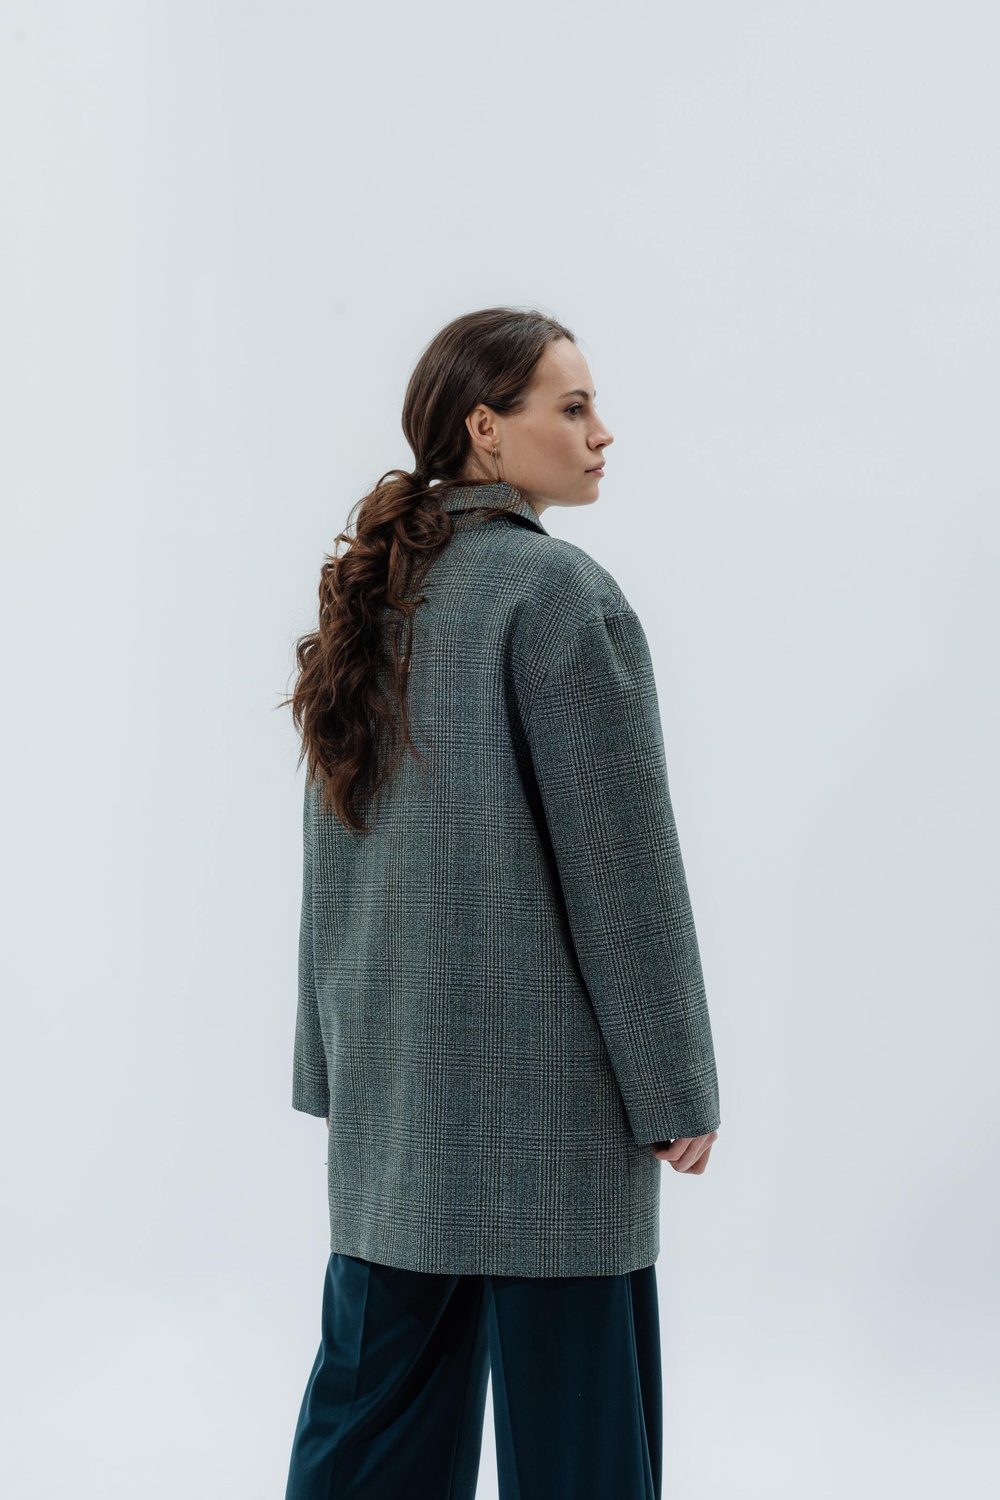 Wool Coat-jacket grey-green check